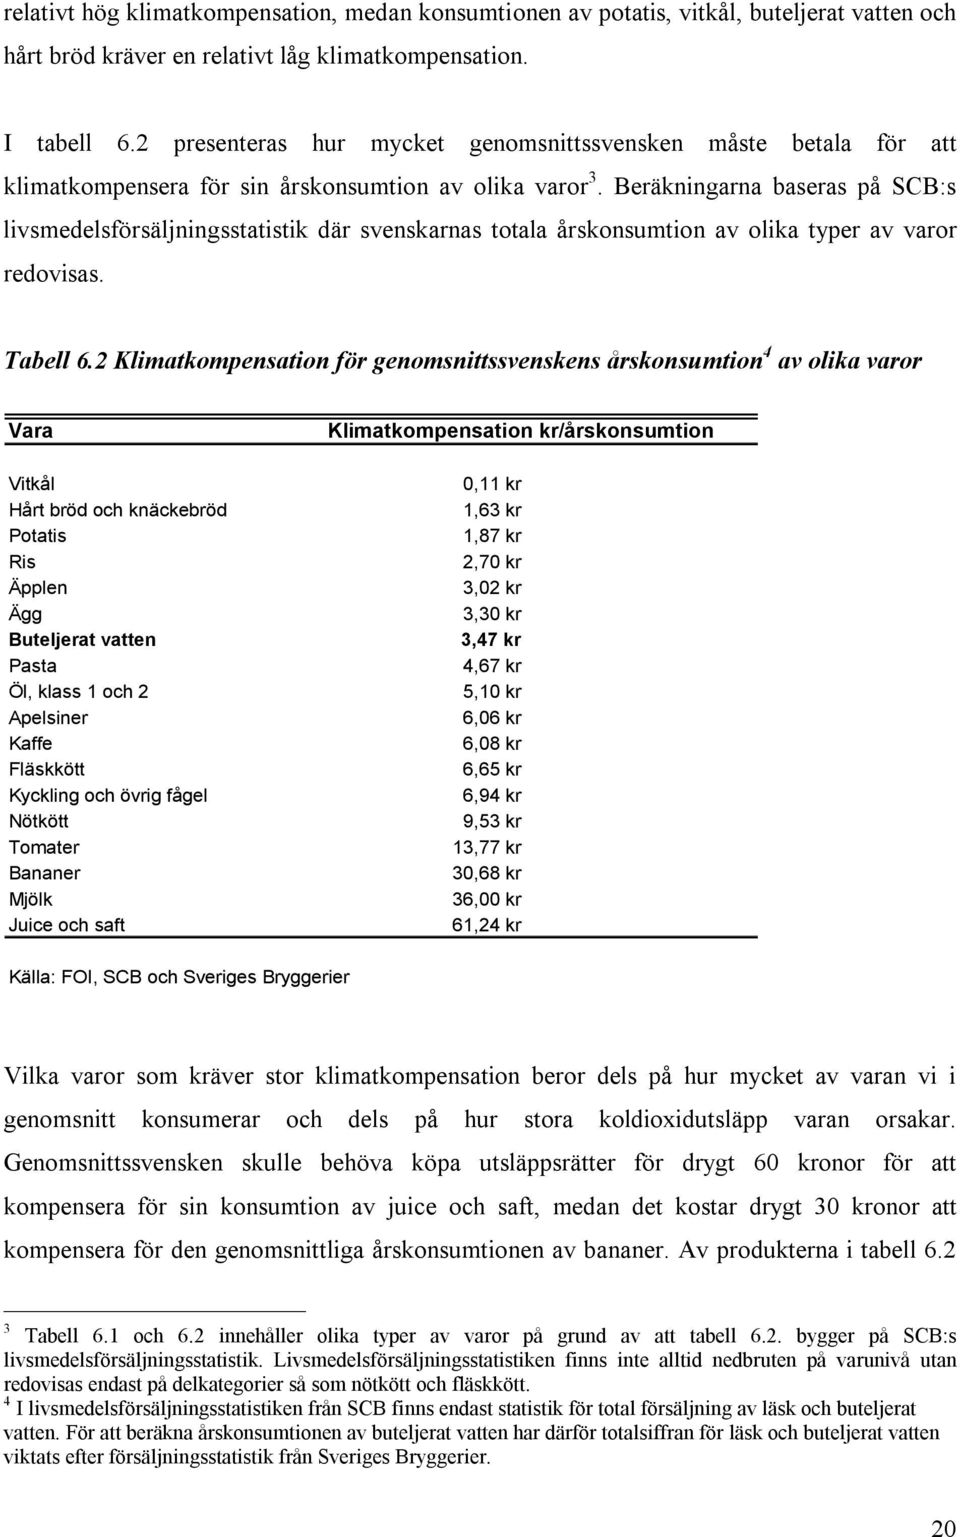 Beräkningarna baseras på SCB:s livsmedelsförsäljningsstatistik där svenskarnas totala årskonsumtion av olika typer av varor redovisas. Tabell 6.